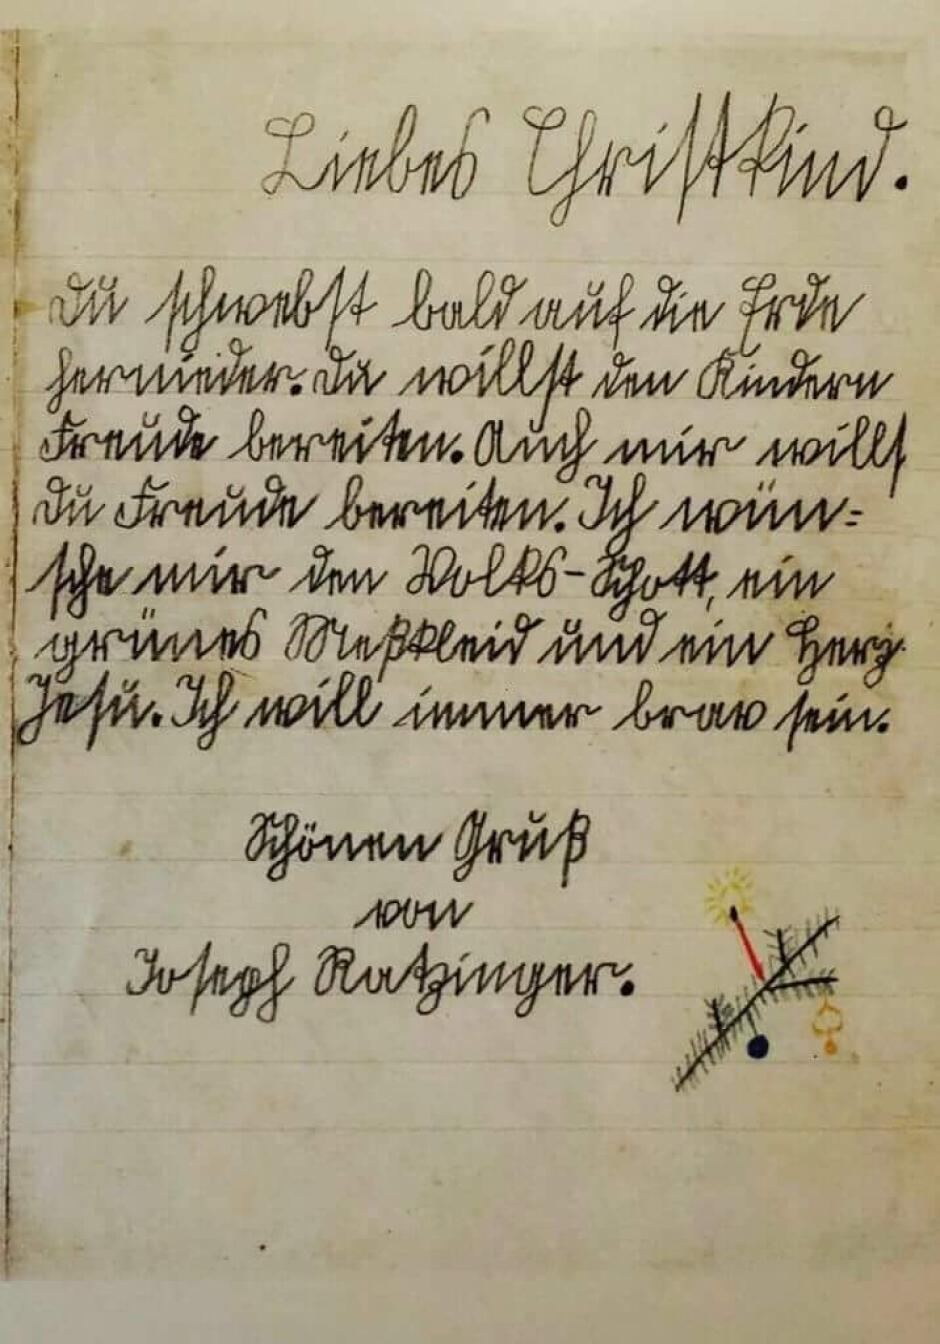 La carta de Joseph Ratzinger al niño Jesús por Navidad